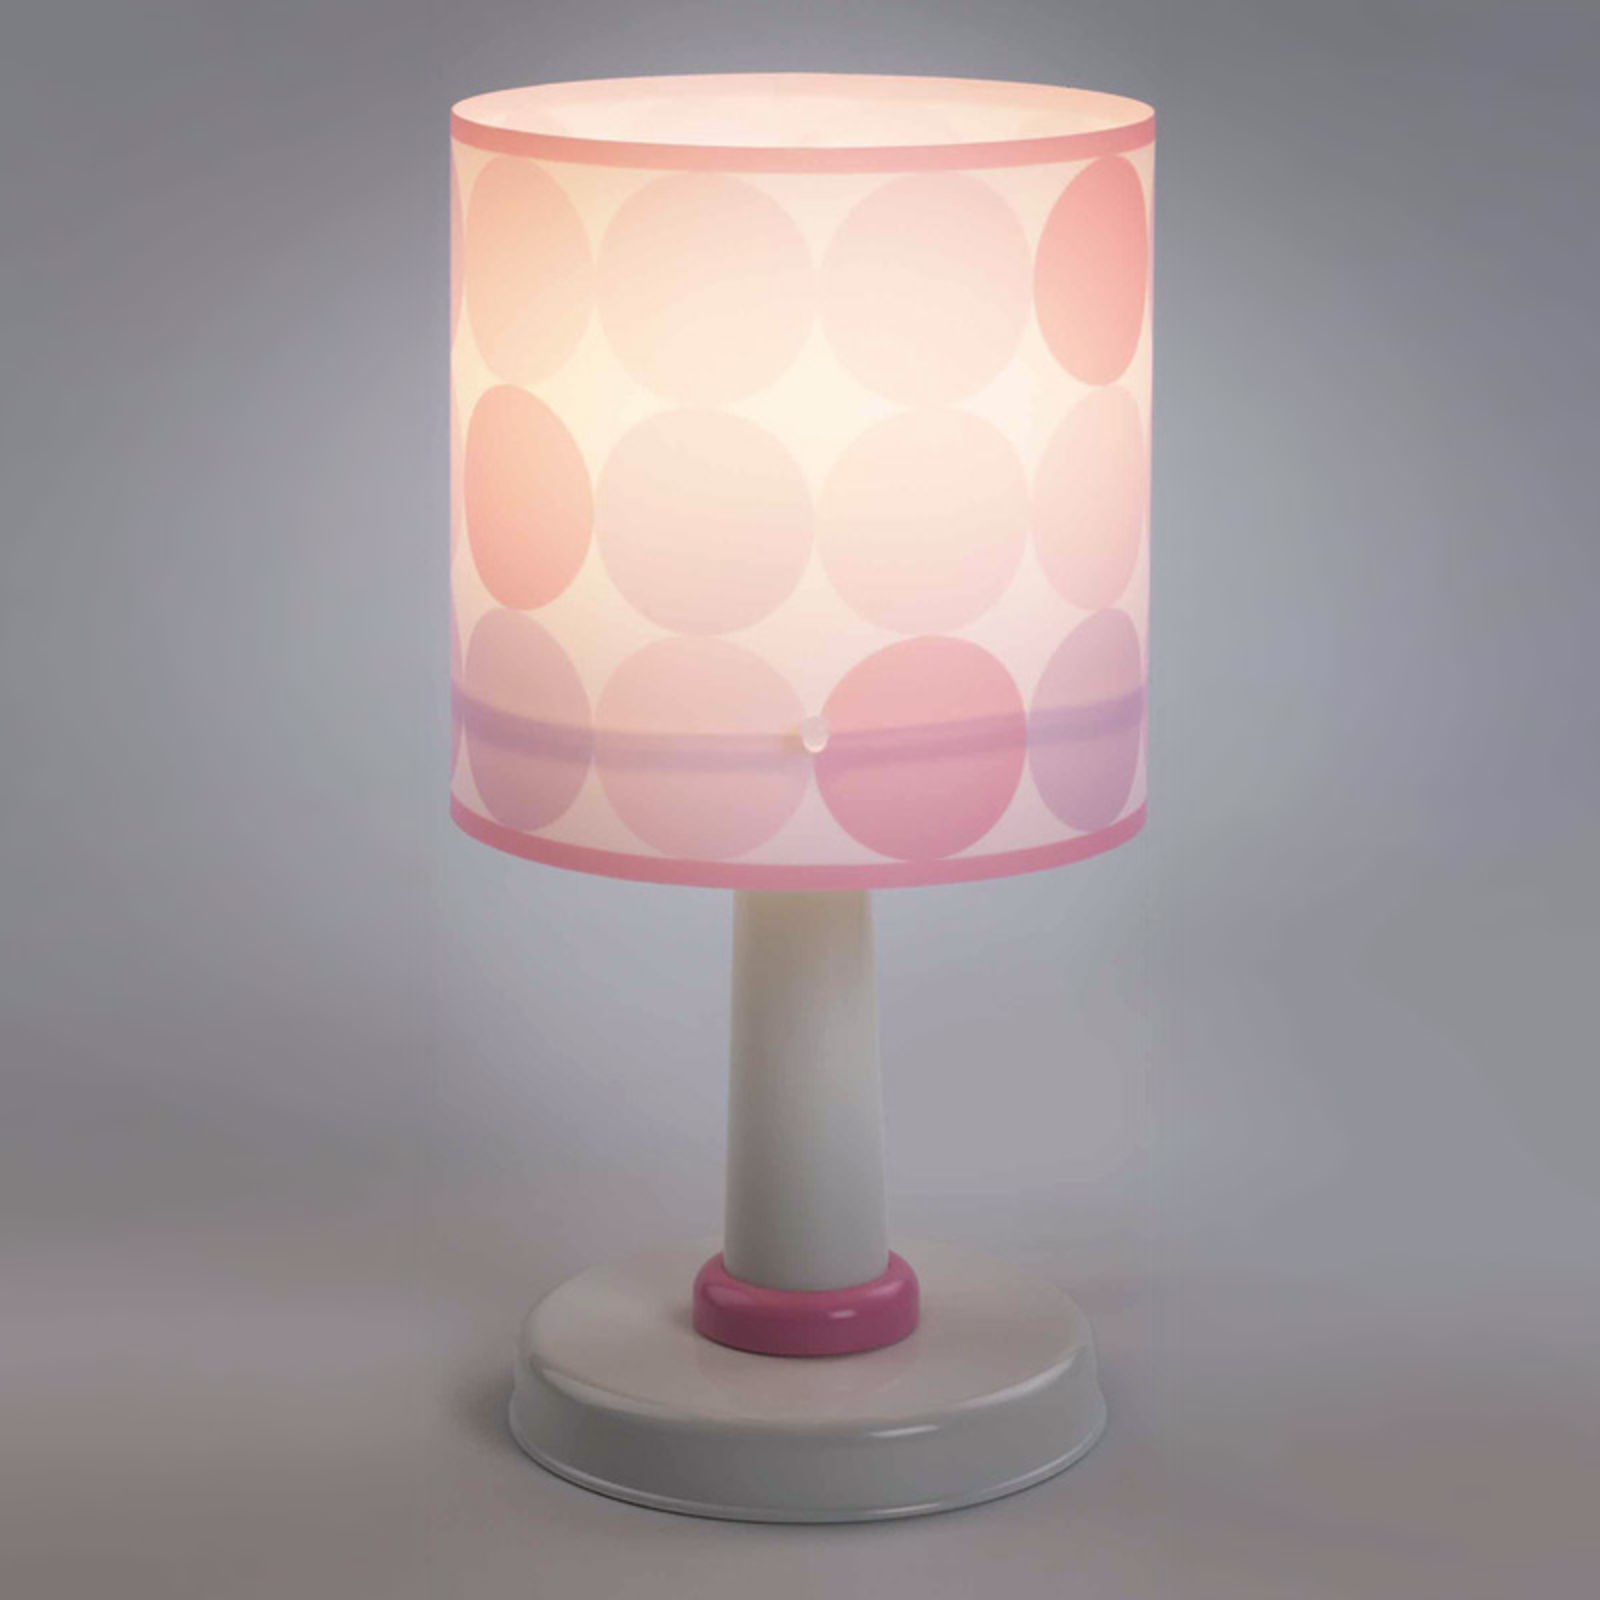 Colors - prikkete bordlampe i rosa